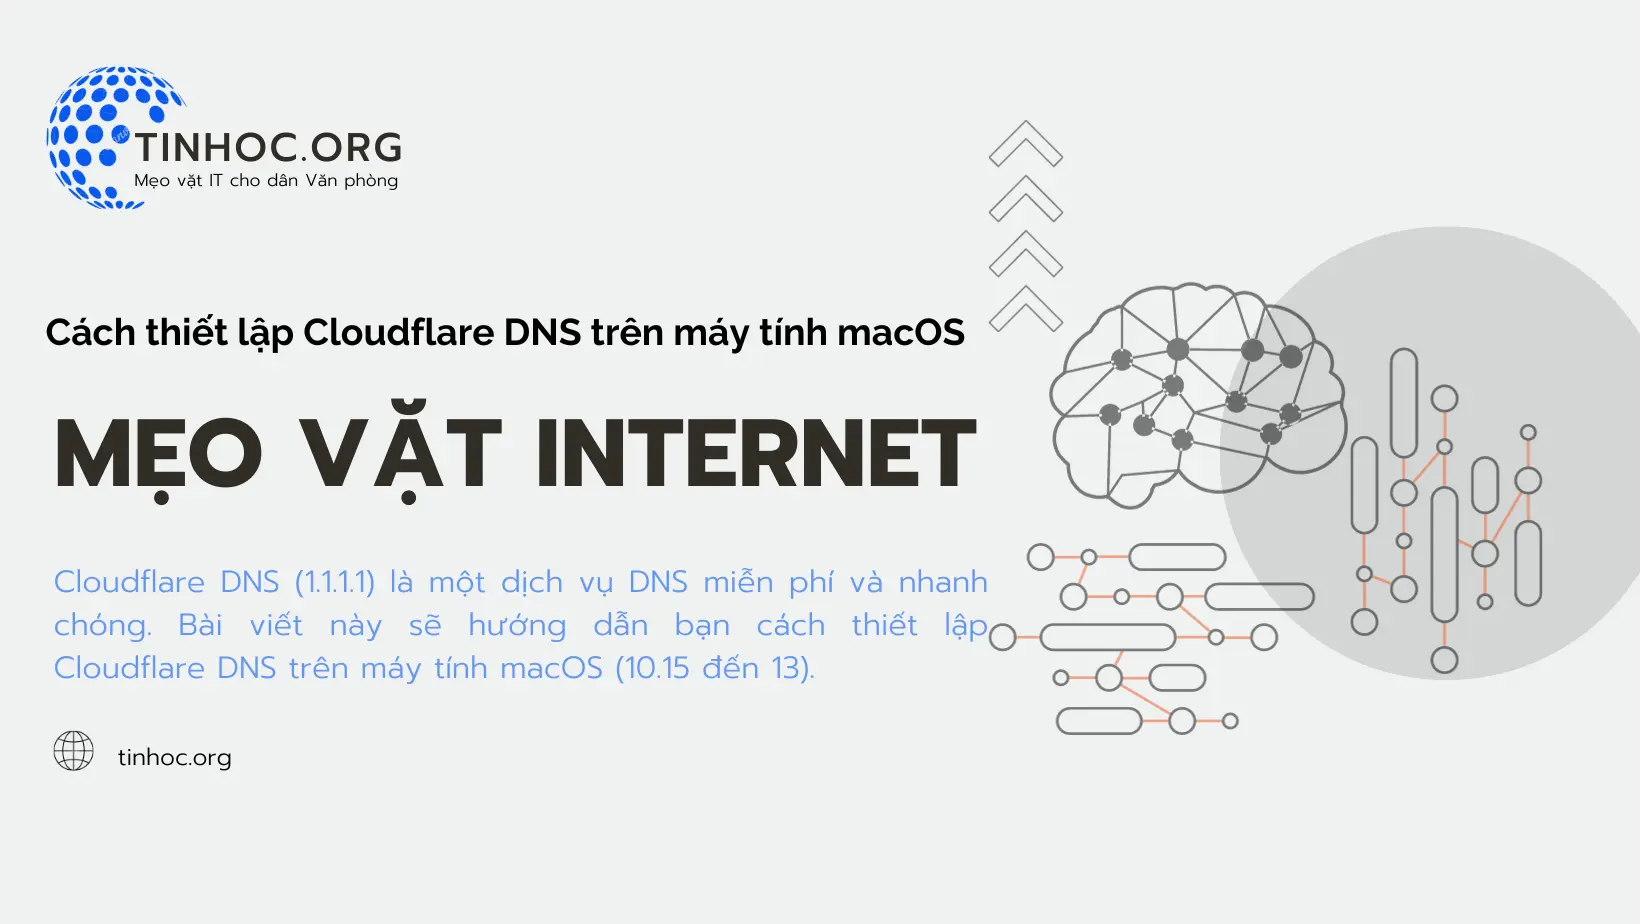 Cách tăng tốc độ duyệt web, bảo vệ quyền riêng tư và ngăn chặn các cuộc tấn công DNS trên macOS (10.15 đến 13).